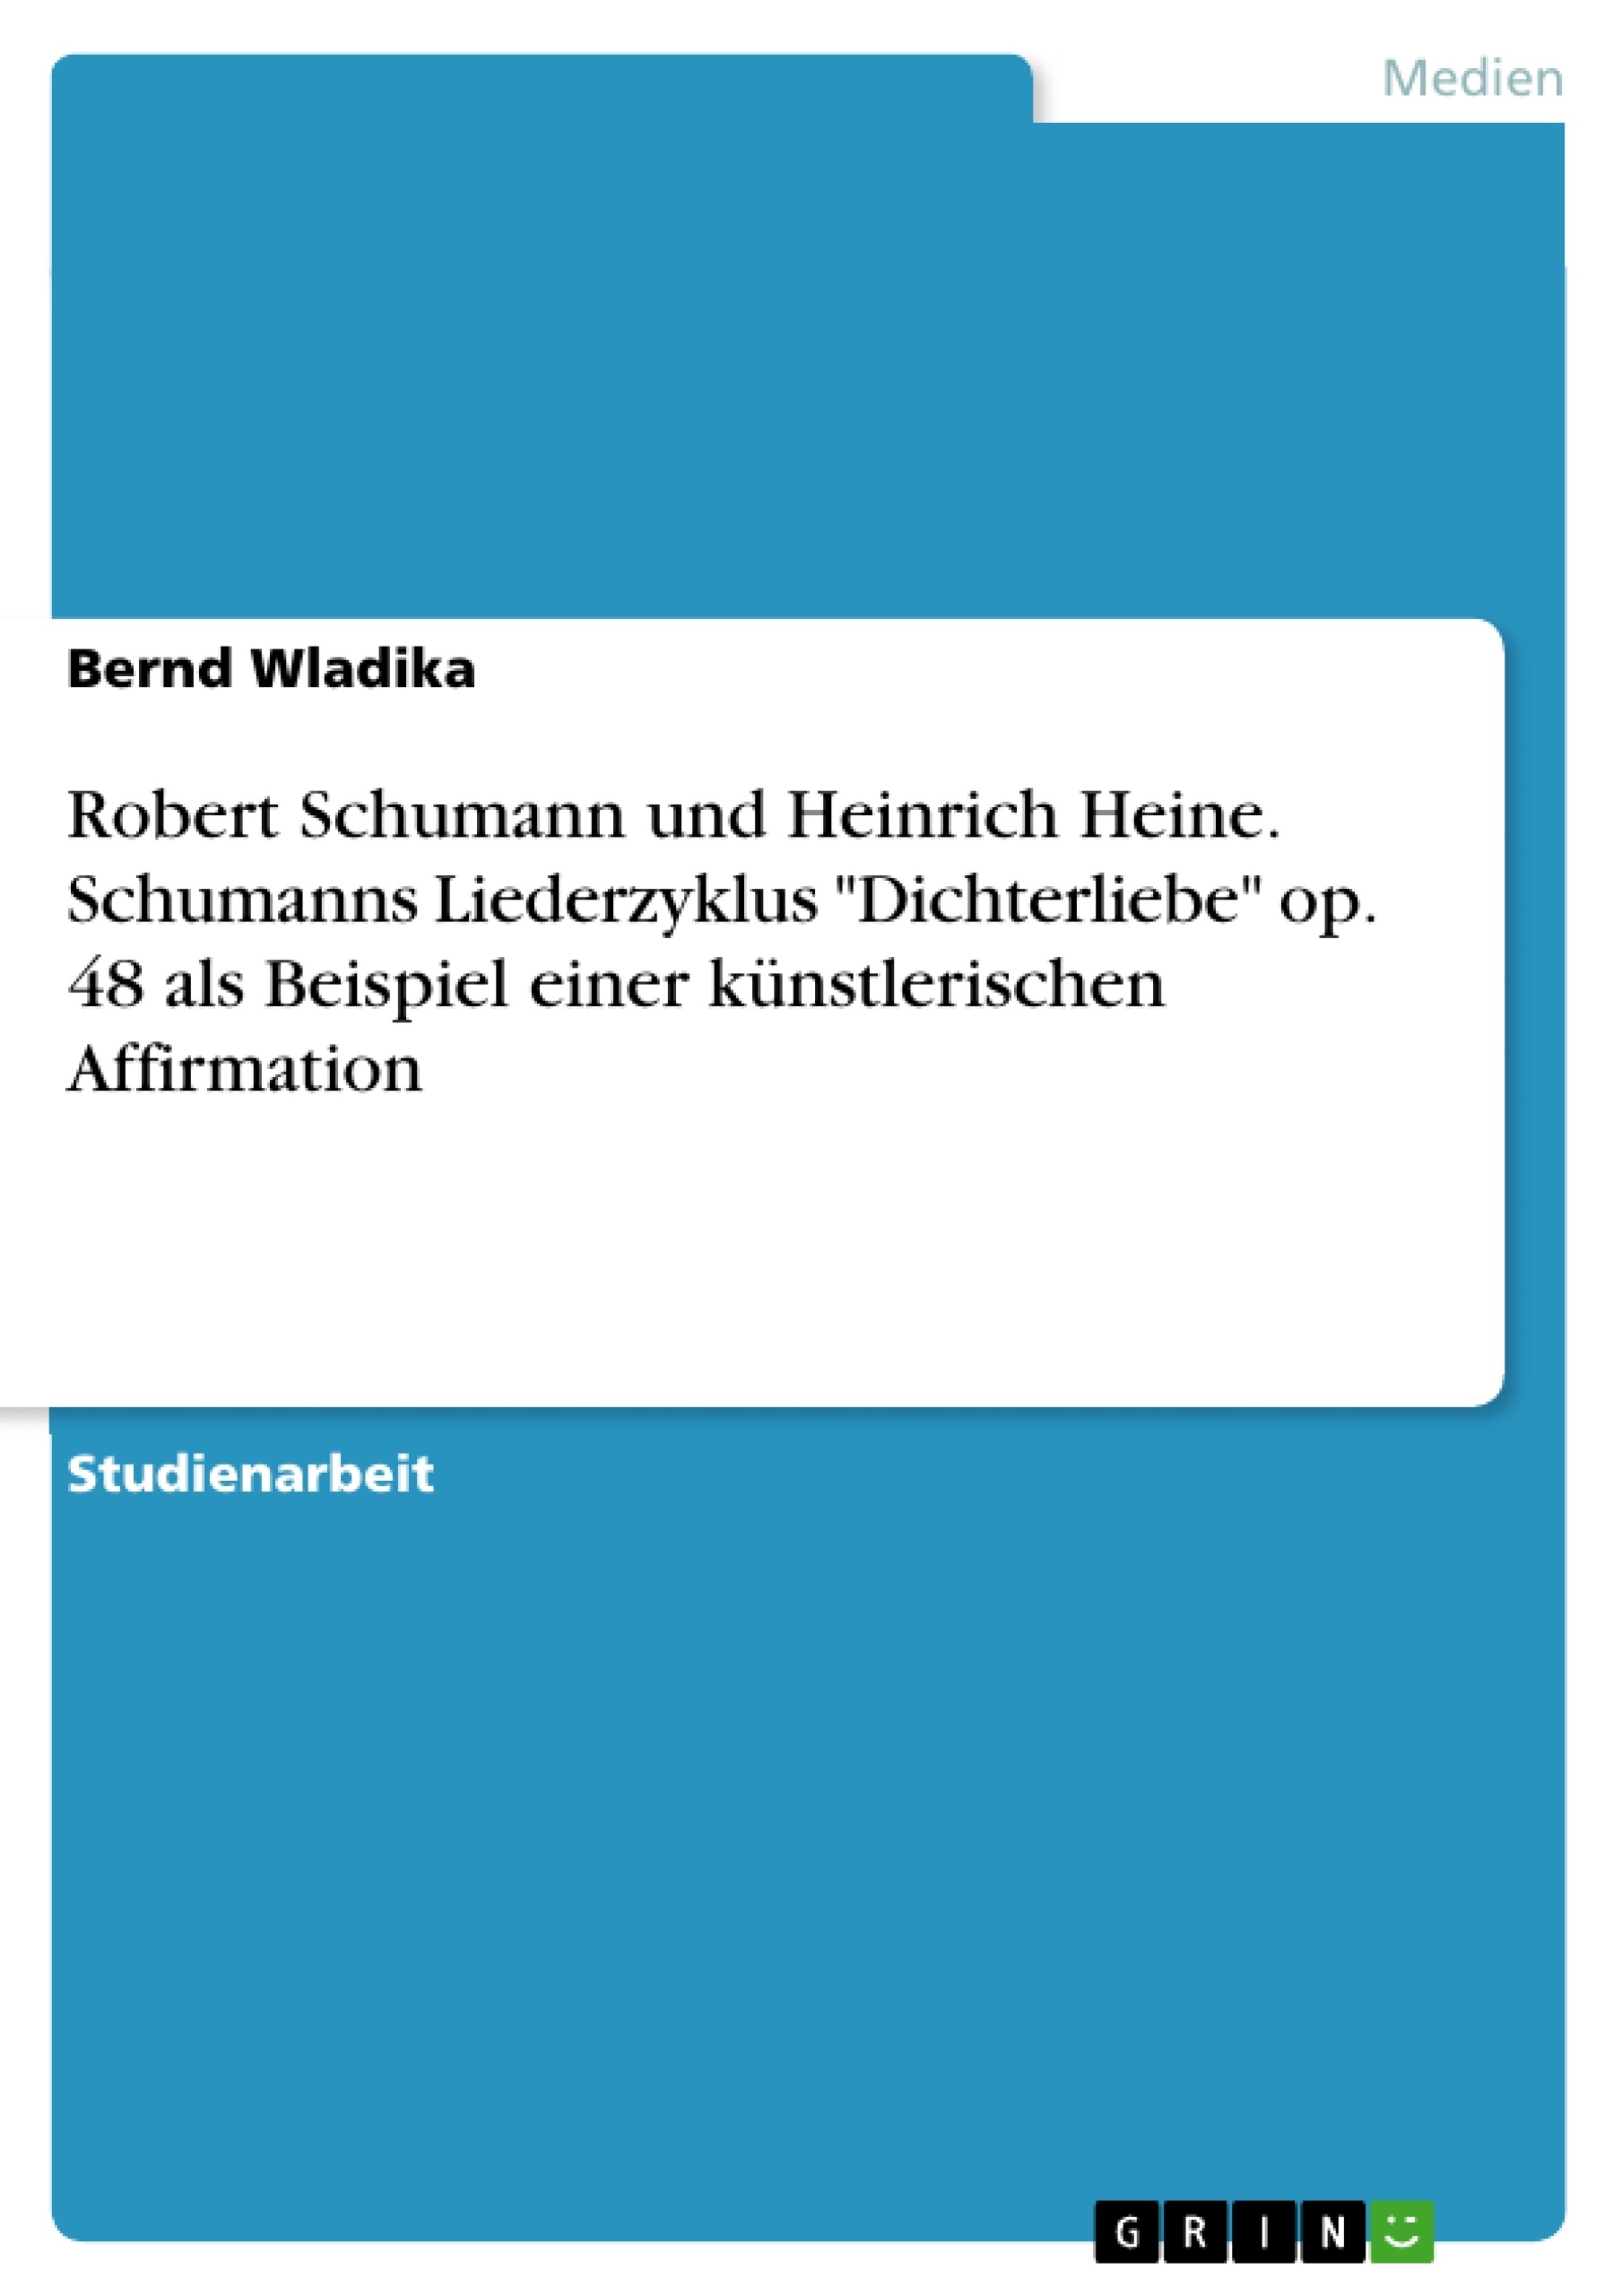 Título: Robert Schumann und Heinrich Heine. Schumanns Liederzyklus "Dichterliebe" op. 48 als Beispiel einer künstlerischen Affirmation